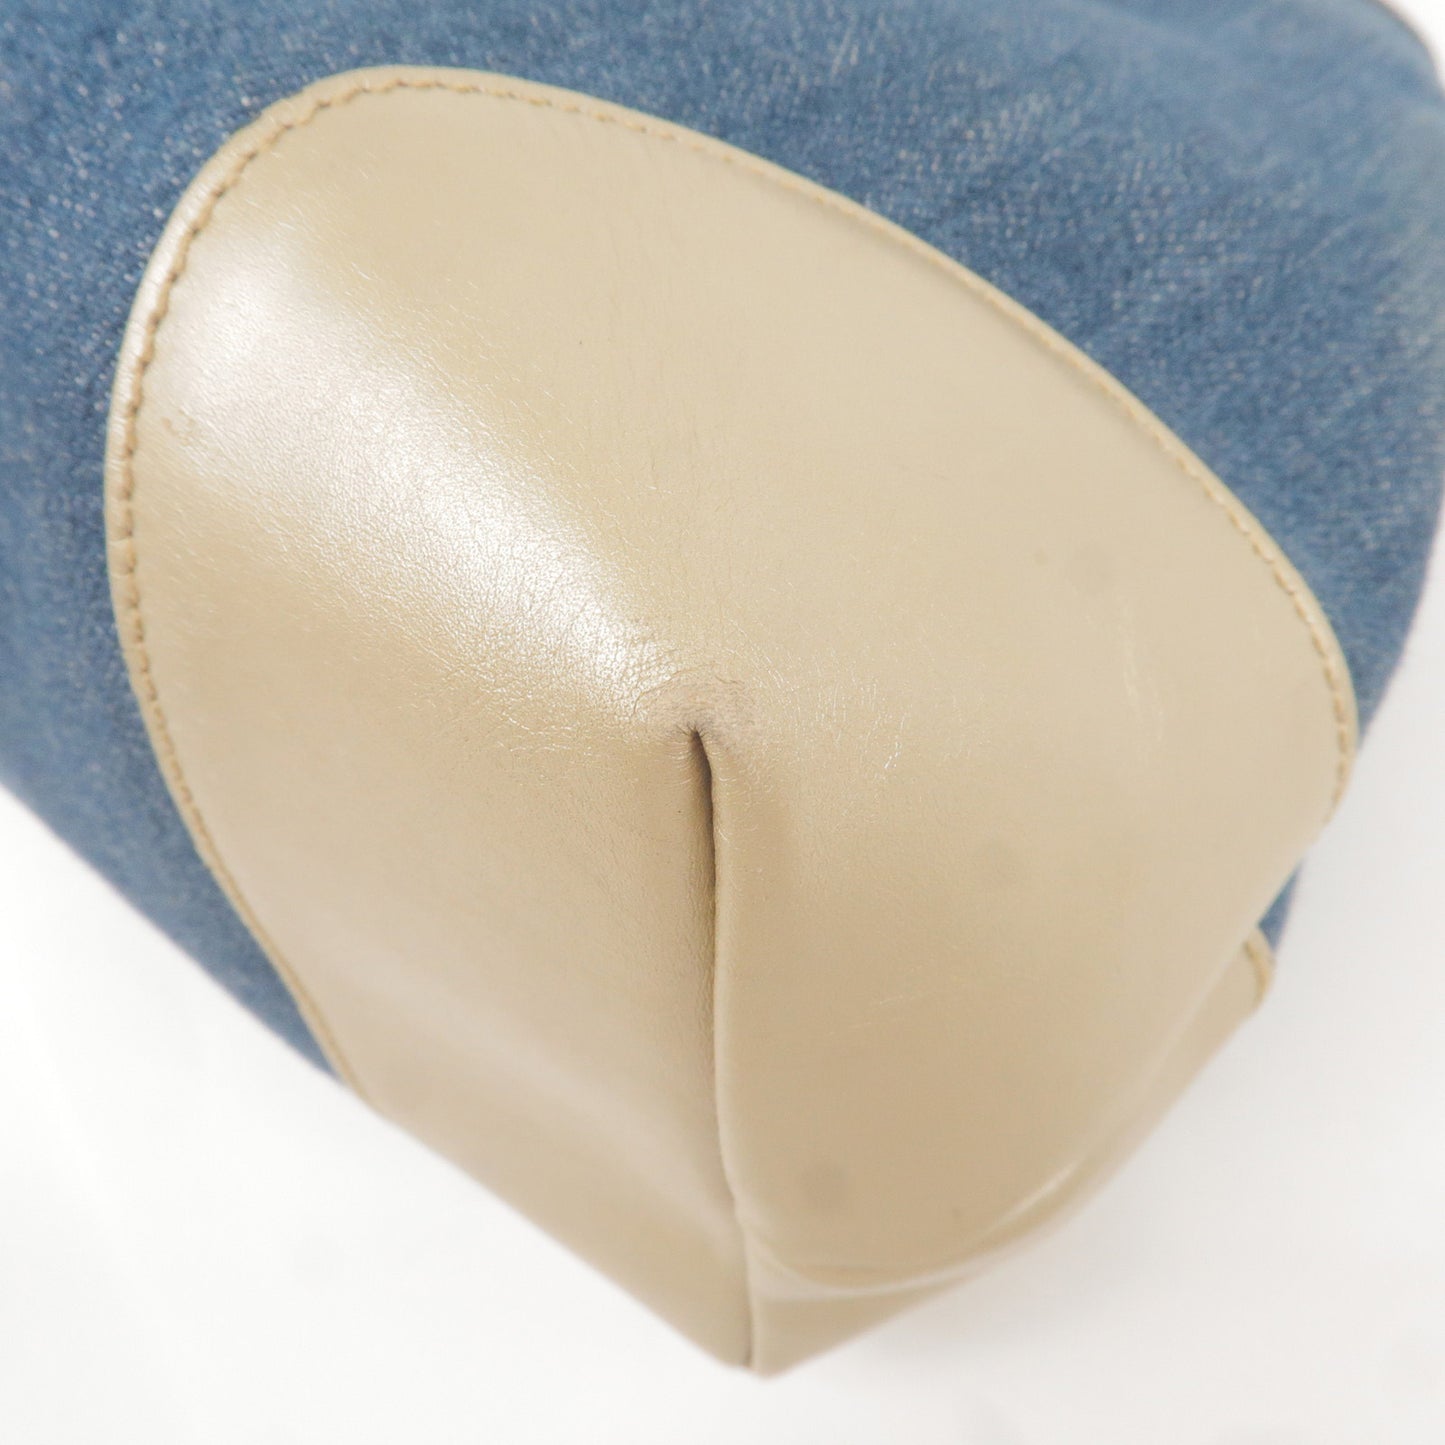 GUCCI Craft Denim Leather Tote Bag Blue Gold 348715